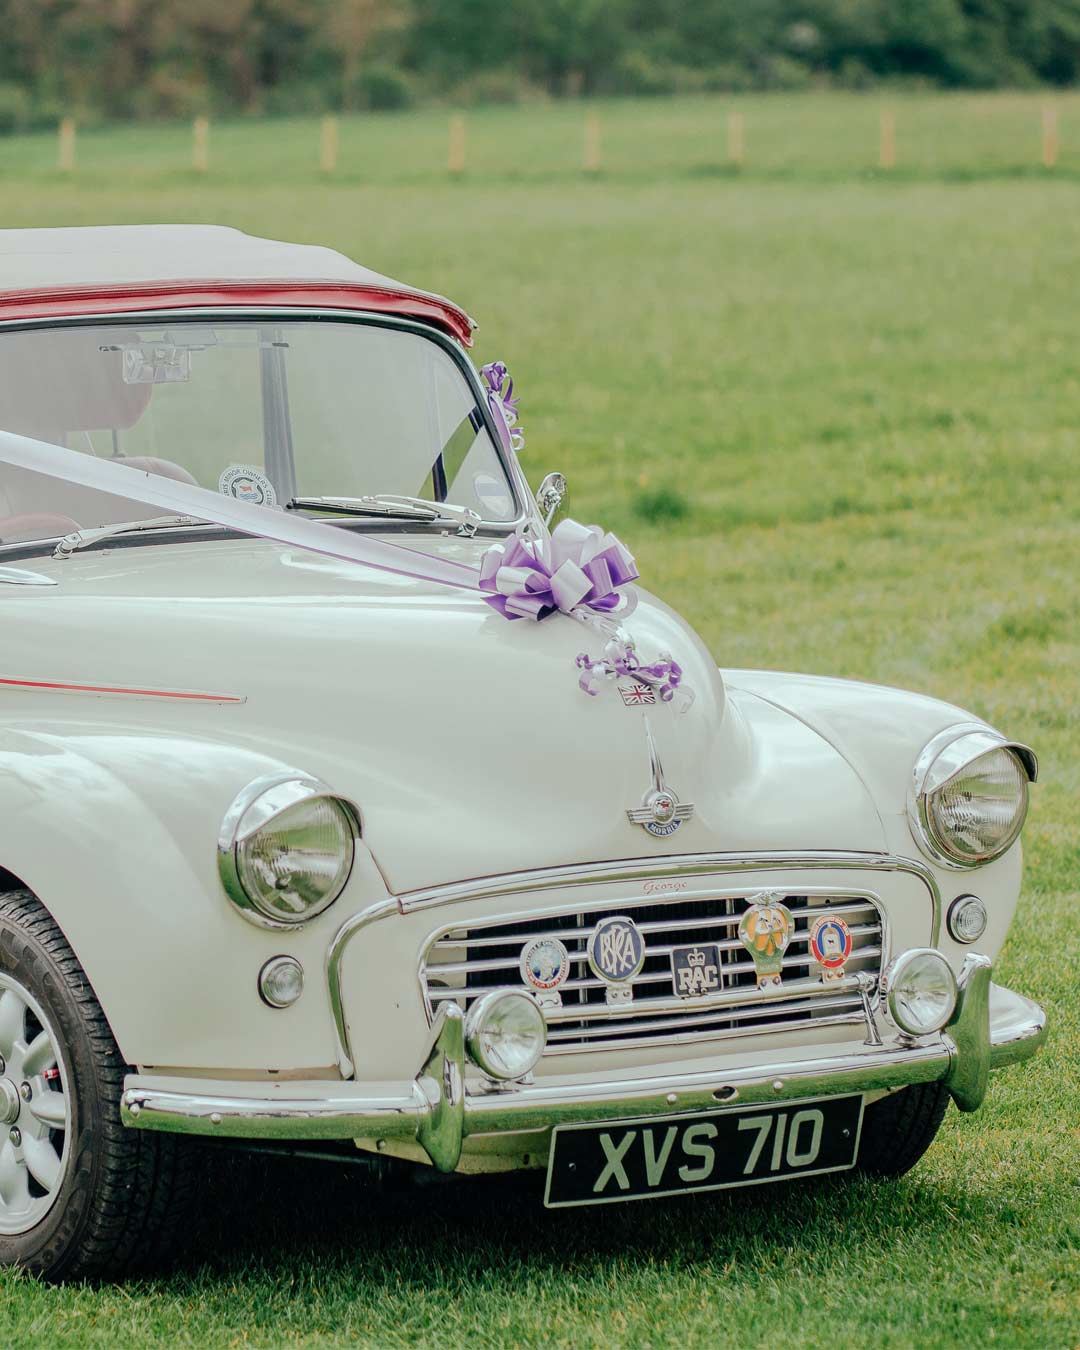 wedding car decor ideas simple bow